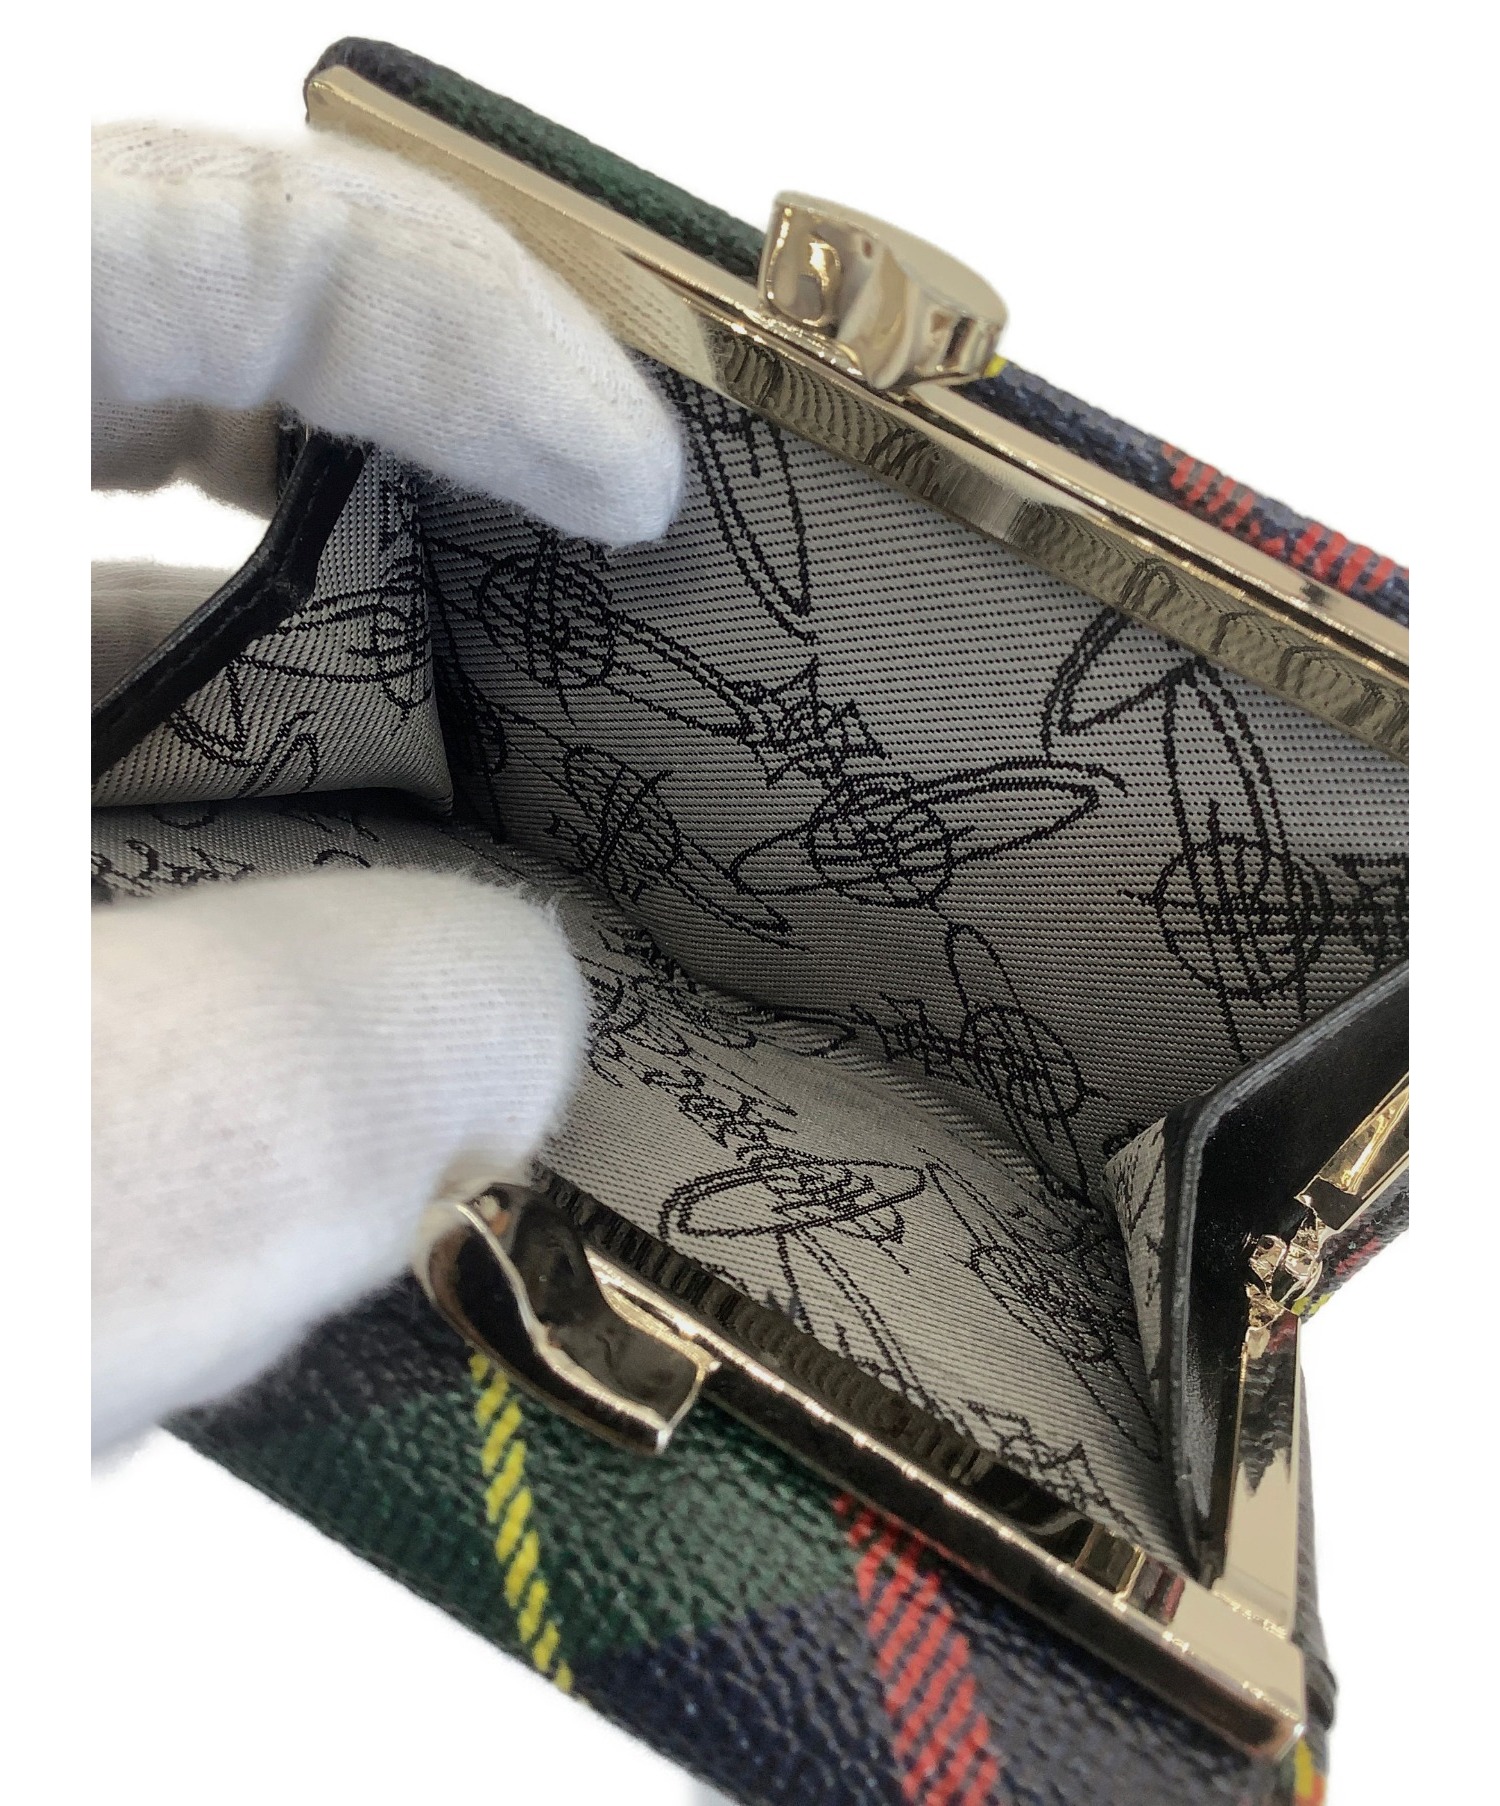 Vivienne Westwood (ヴィヴィアンウエストウッド) 3つ折り財布 サイズ:下記参照 51010018-10256 チェック柄